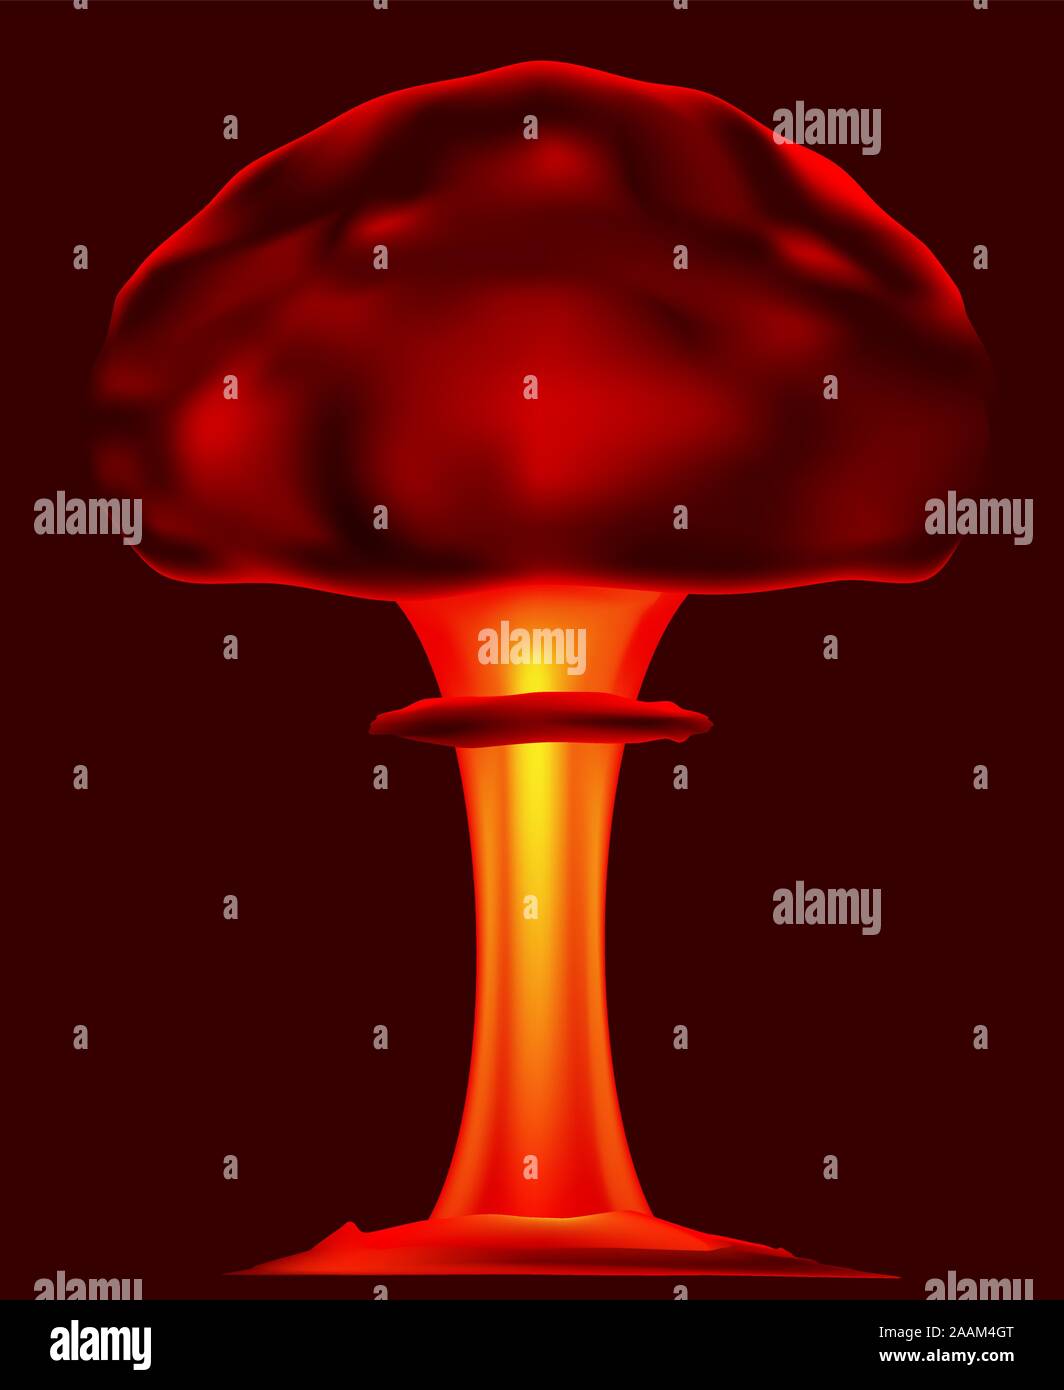 Bomba atomica explotion illustrazione vettoriale Illustrazione Vettoriale